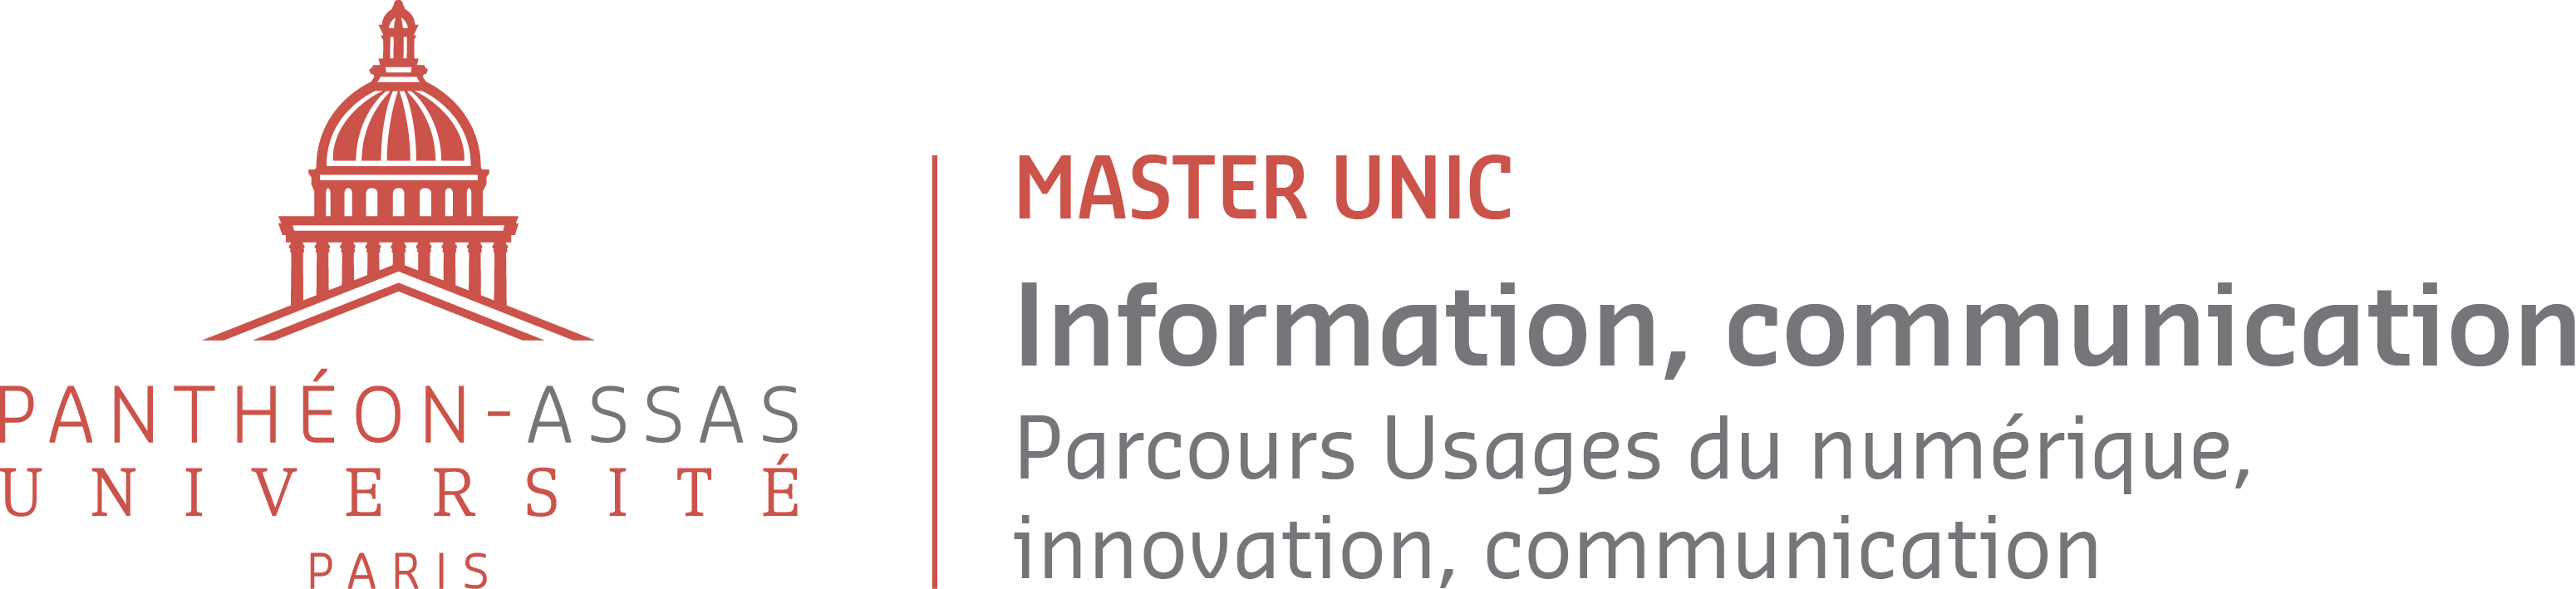 Logo du Master Unic